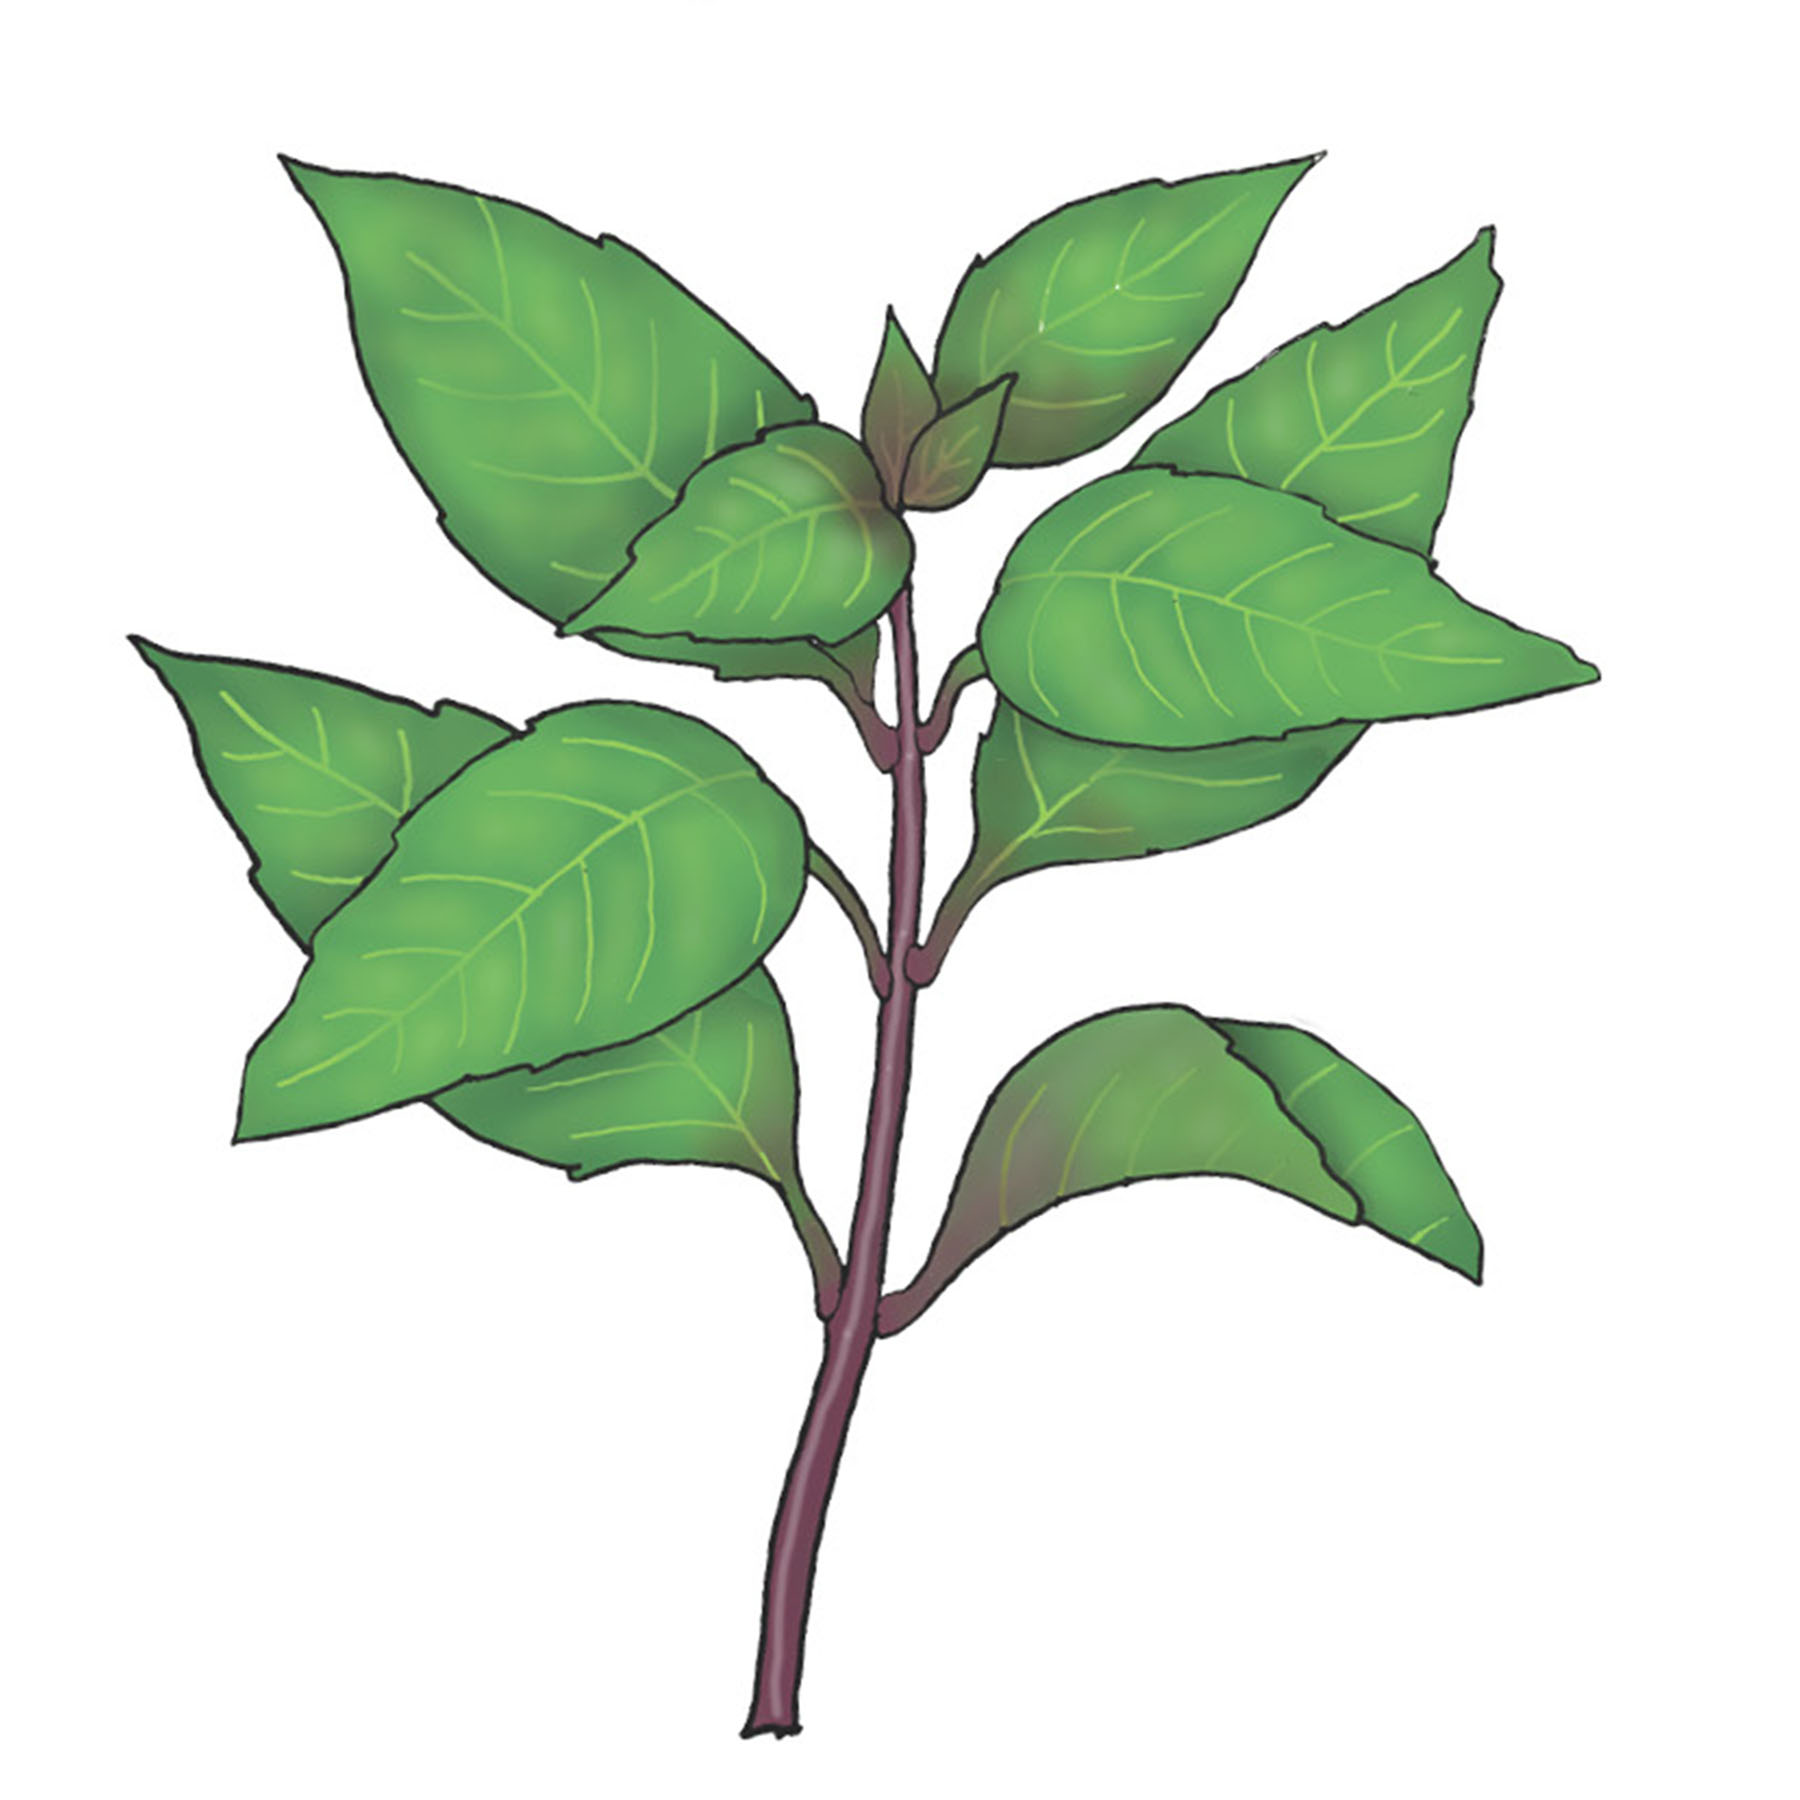 indtryk gentagelse Advarsel Thai Basilikum - En basilikum med violette stængler og spidse blade med en  mild smag af anis - Økologisk - TagTomat